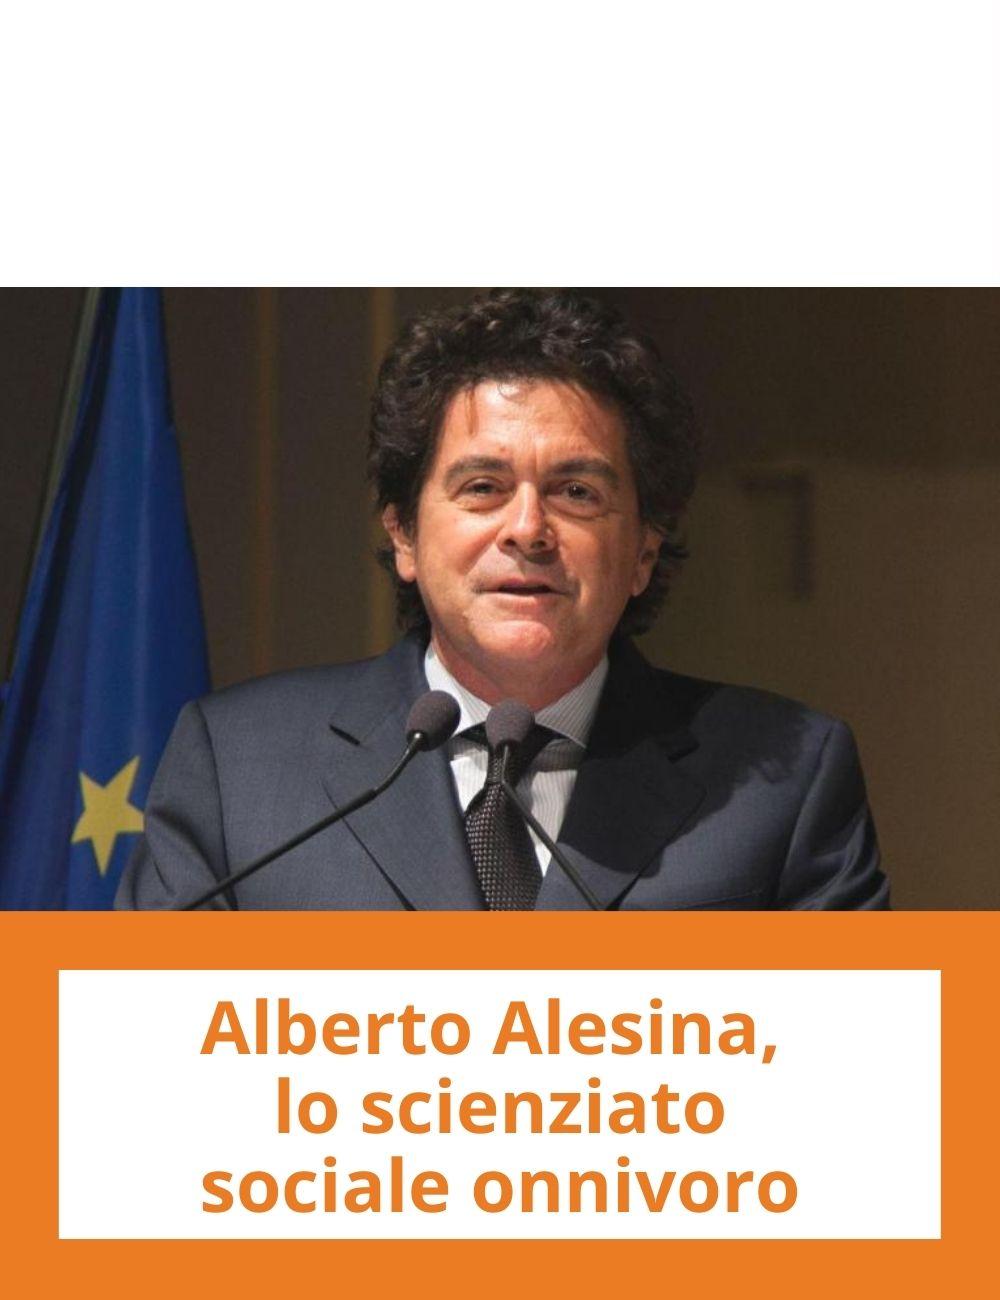 Immagine con link ad articoli su temi simili. L'immagine di Alberto Alesina rimanda all'articolo intitolato: Alberto Alesina, lo scienziato sociale onnivoro.